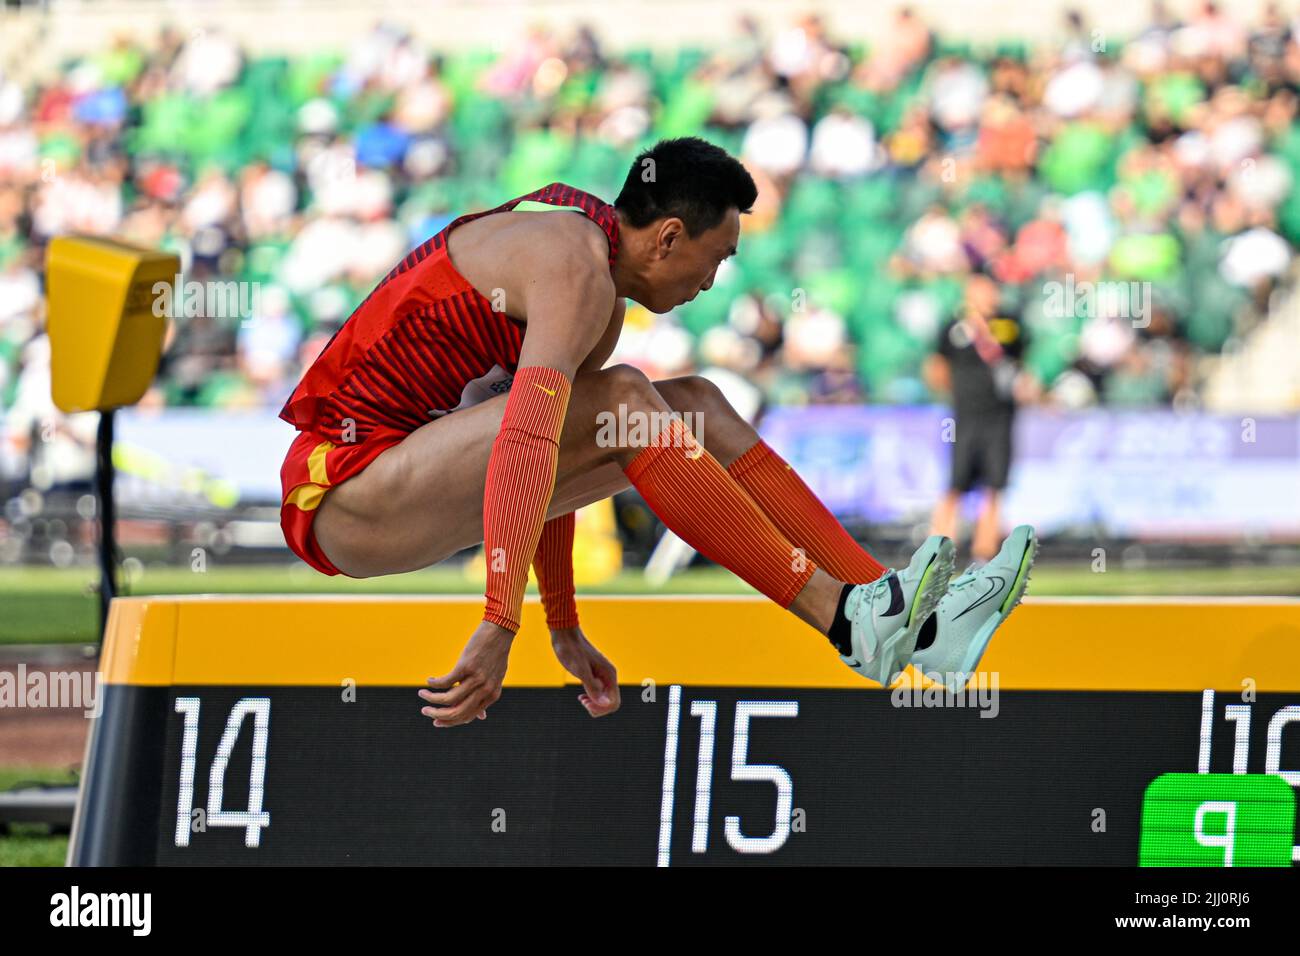 EUGENE, USA - 21. JULI: Yaming Zhu aus China tritt während der Leichtathletik-Weltmeisterschaften am 21. Juli 2022 in Eugene, USA, beim Dreisprung der Männer an (Foto: Andy Astfalck/BSR Agency) Atletiekunie Stockfoto